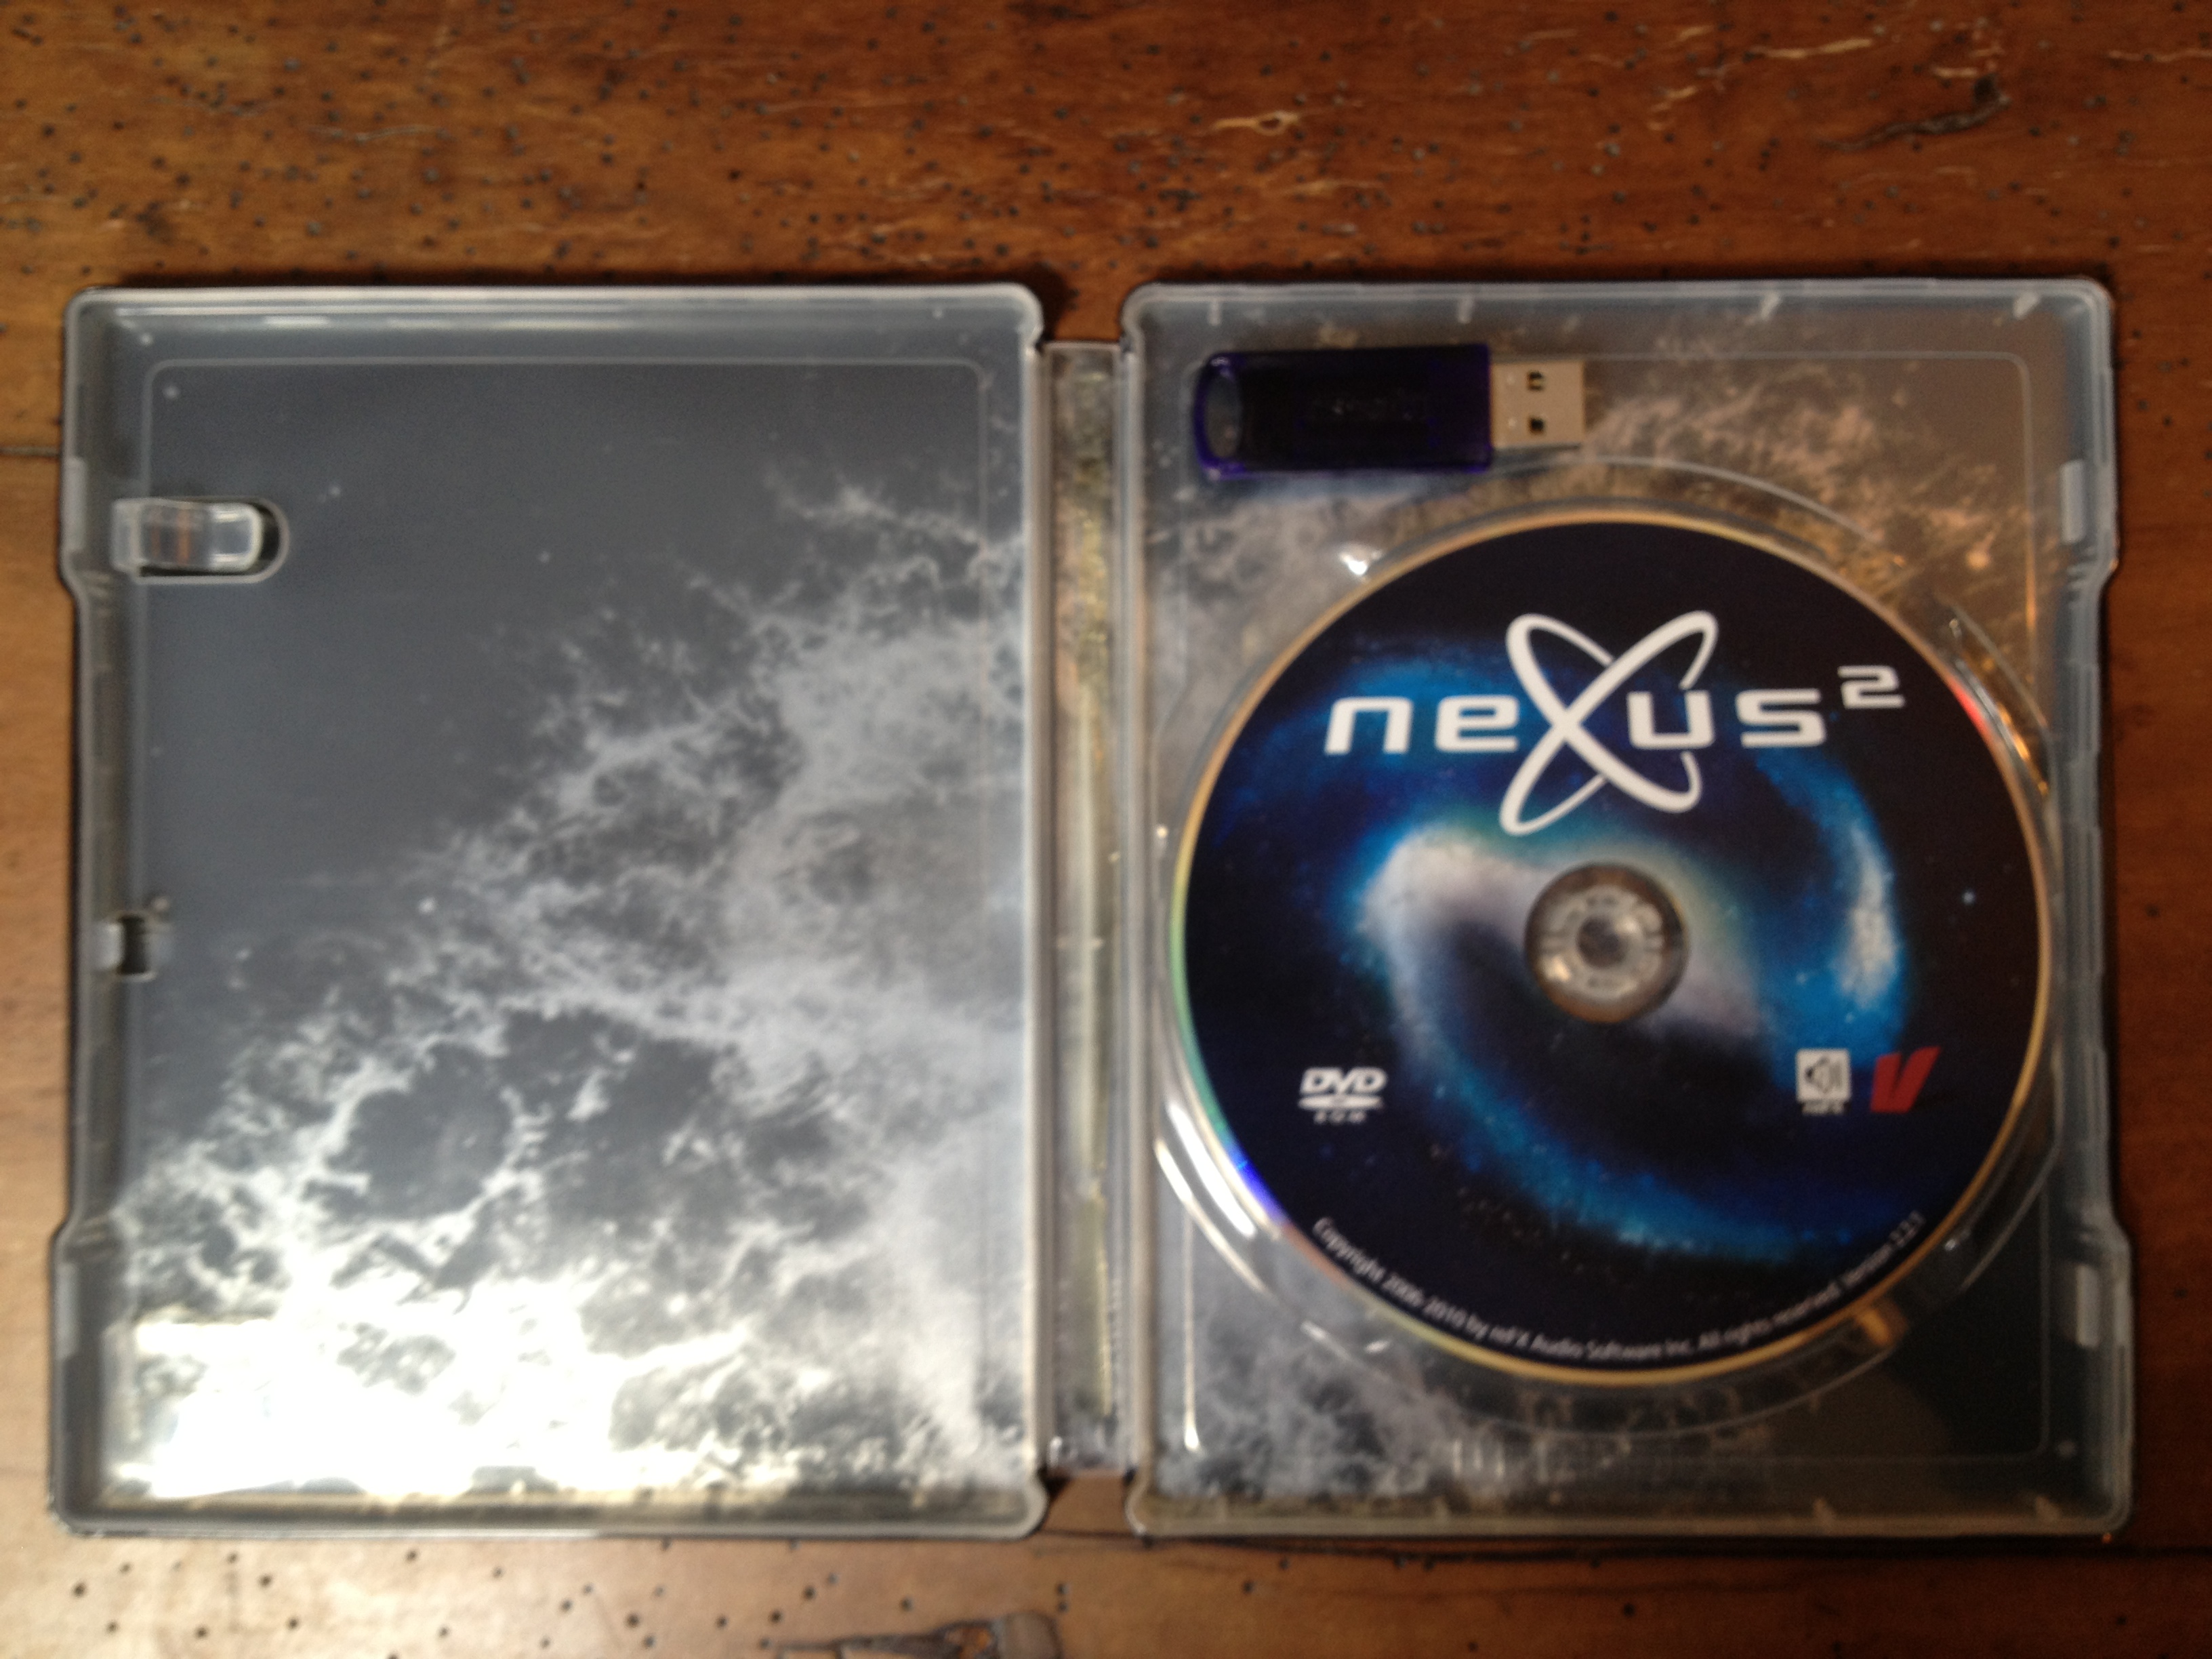 Download nexus 2 mediafire free